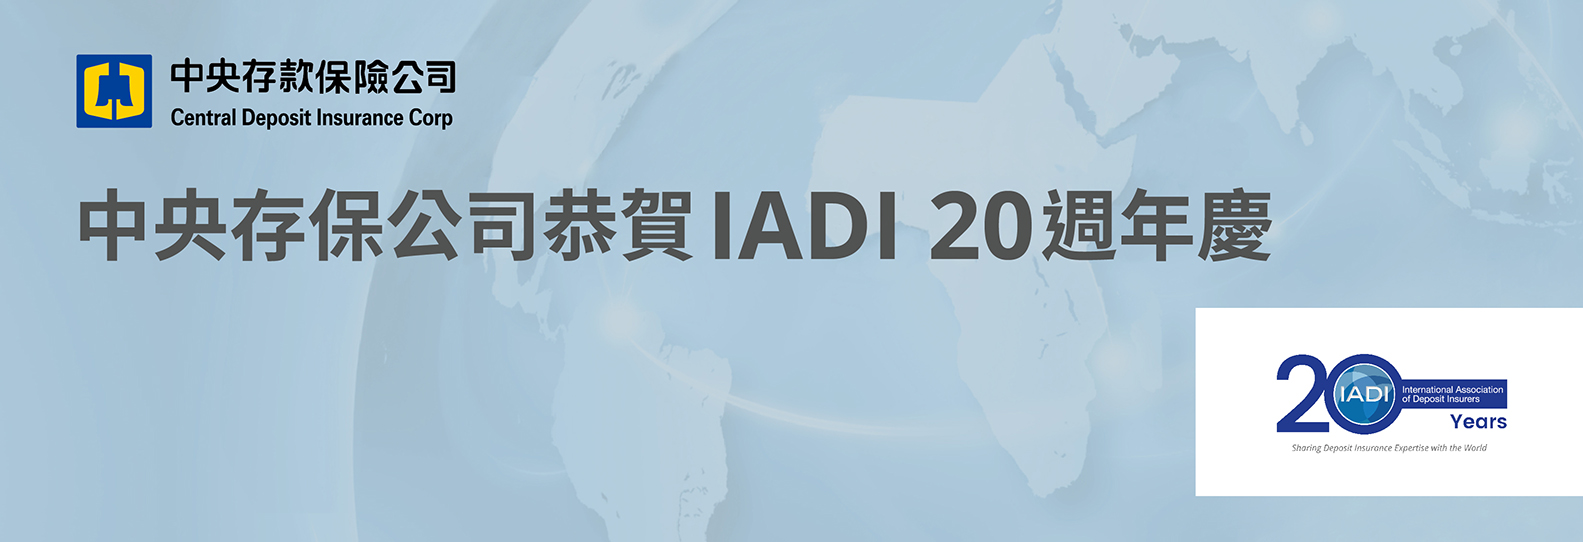 國際存款保險機構協會（IADI）20週年慶